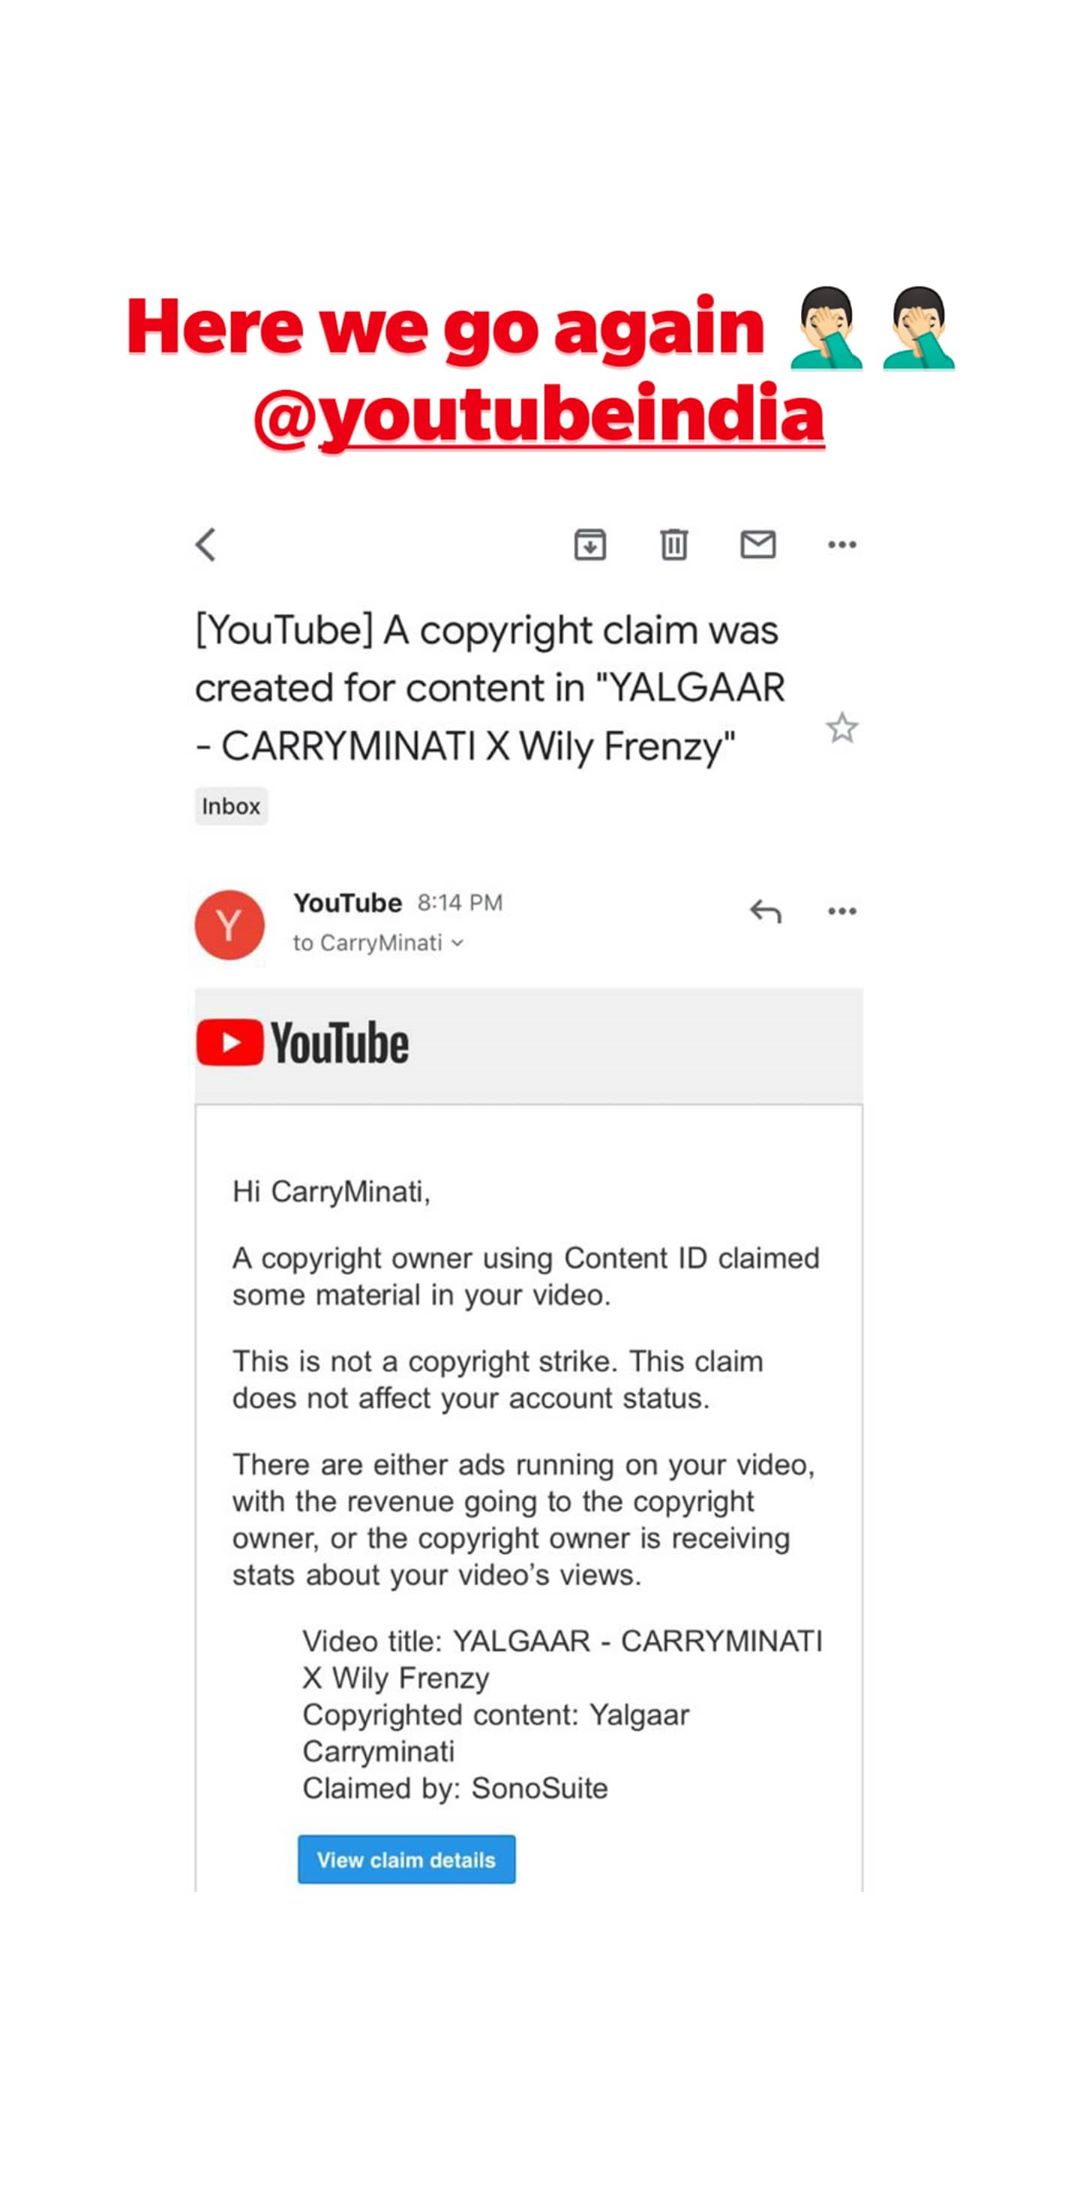 CarryMinati gets a copyright claim on Yalgaar video